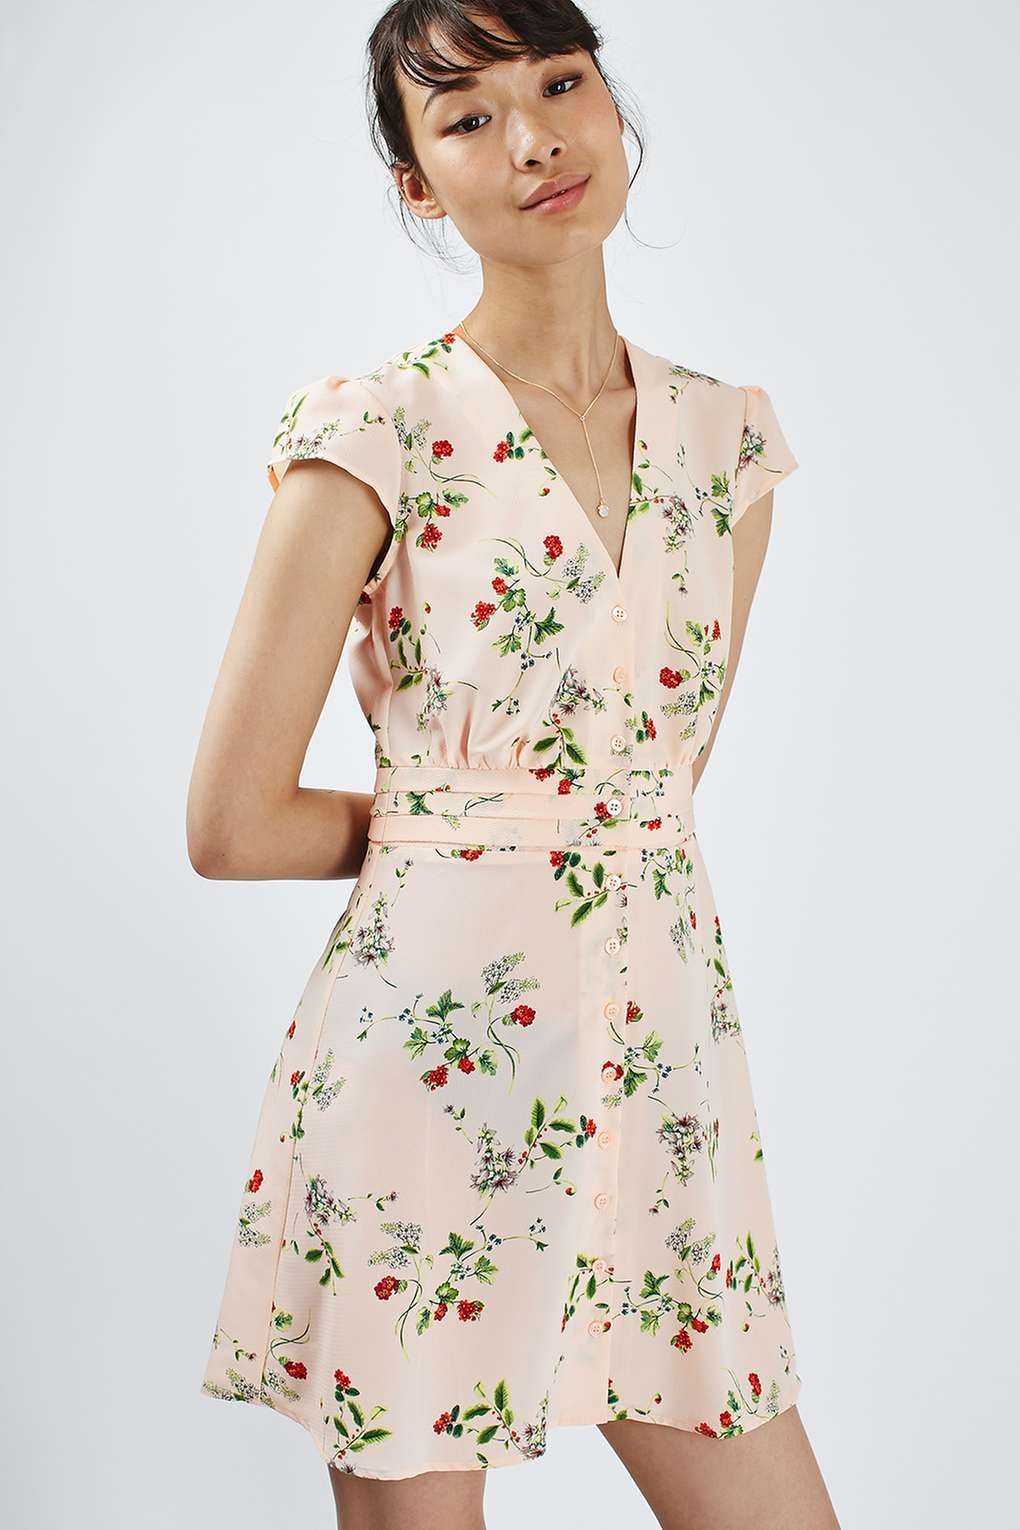 Floral Tea Dress -   17 dress Simple floral ideas